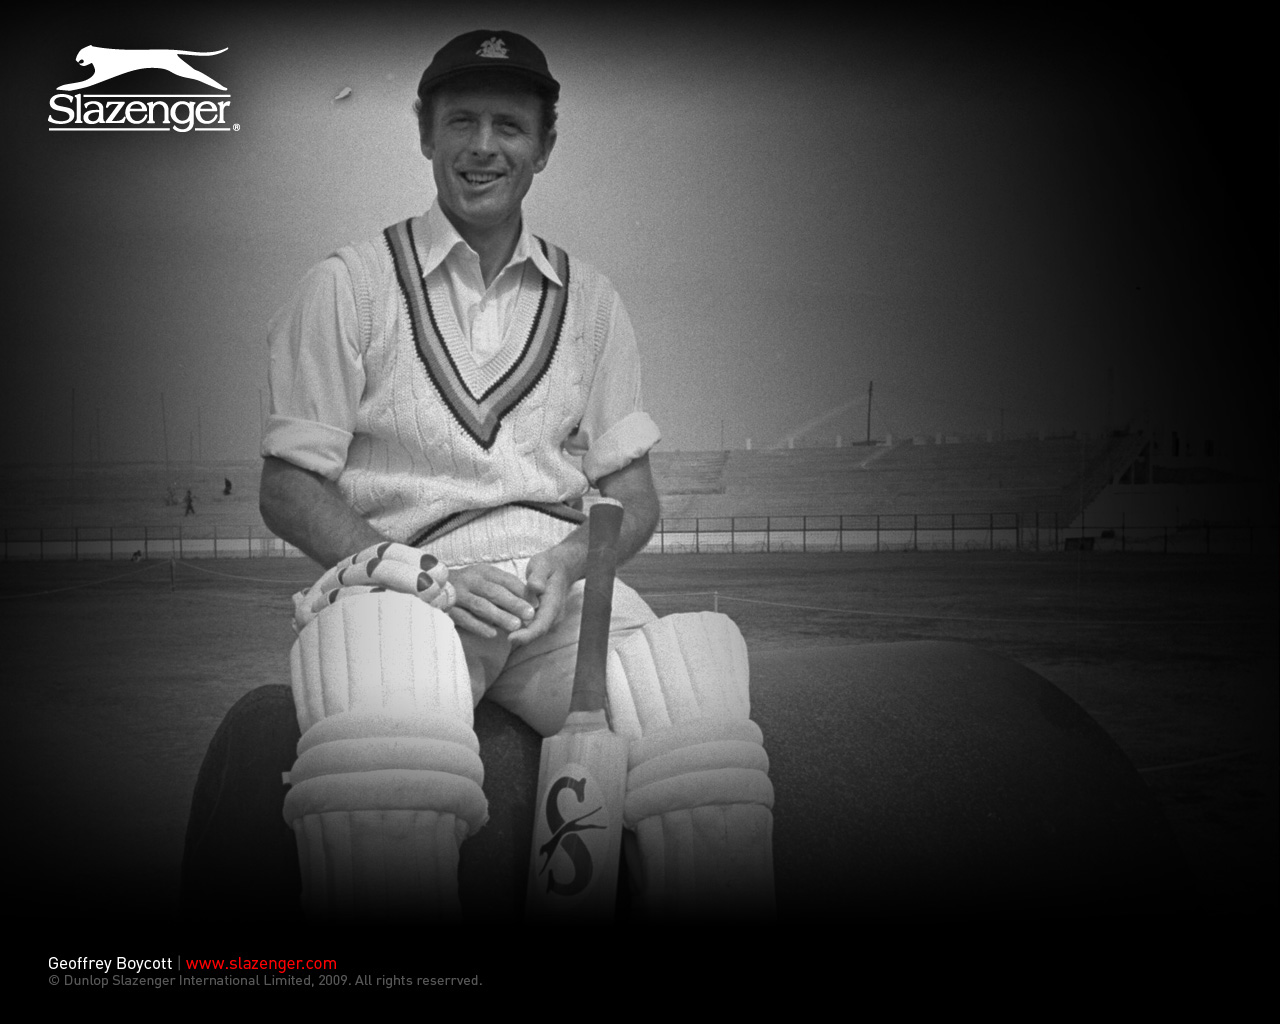 Geoffrey Boycott Cricket 1280x1024